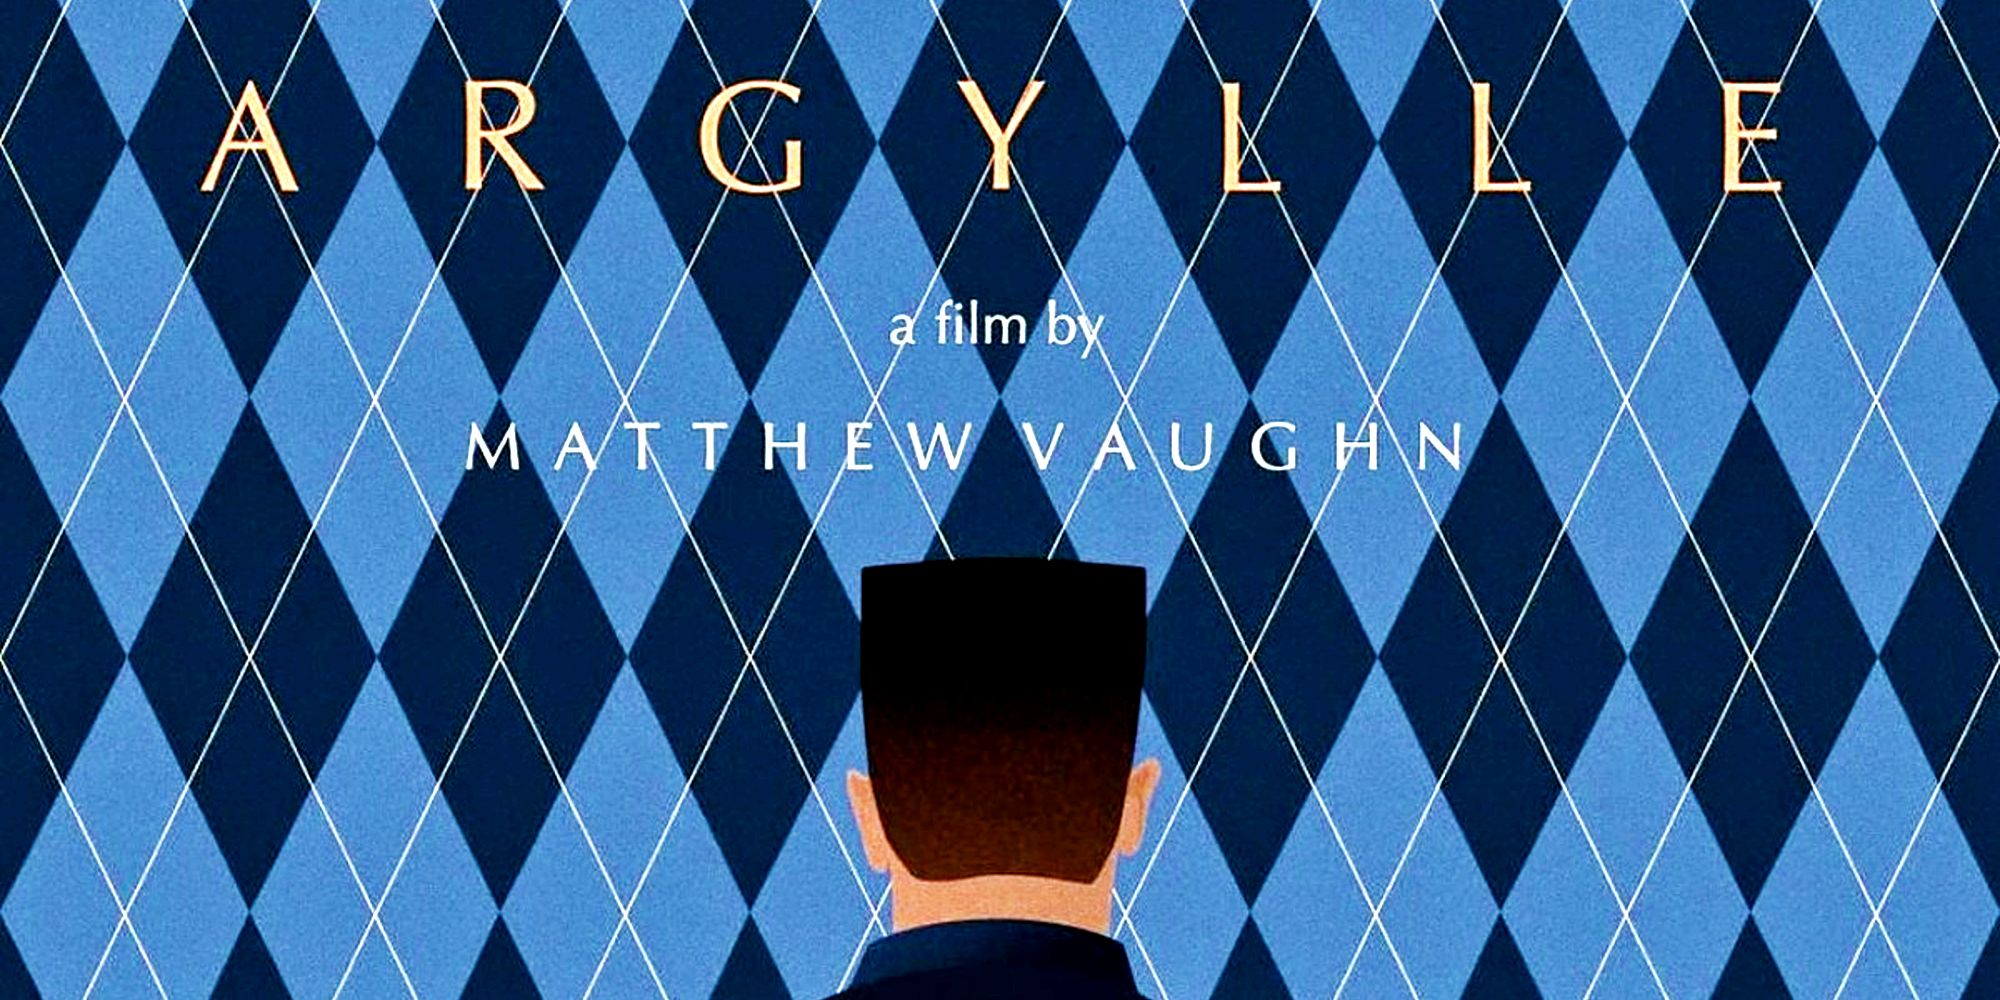 Argylle by Matthew Vaughn